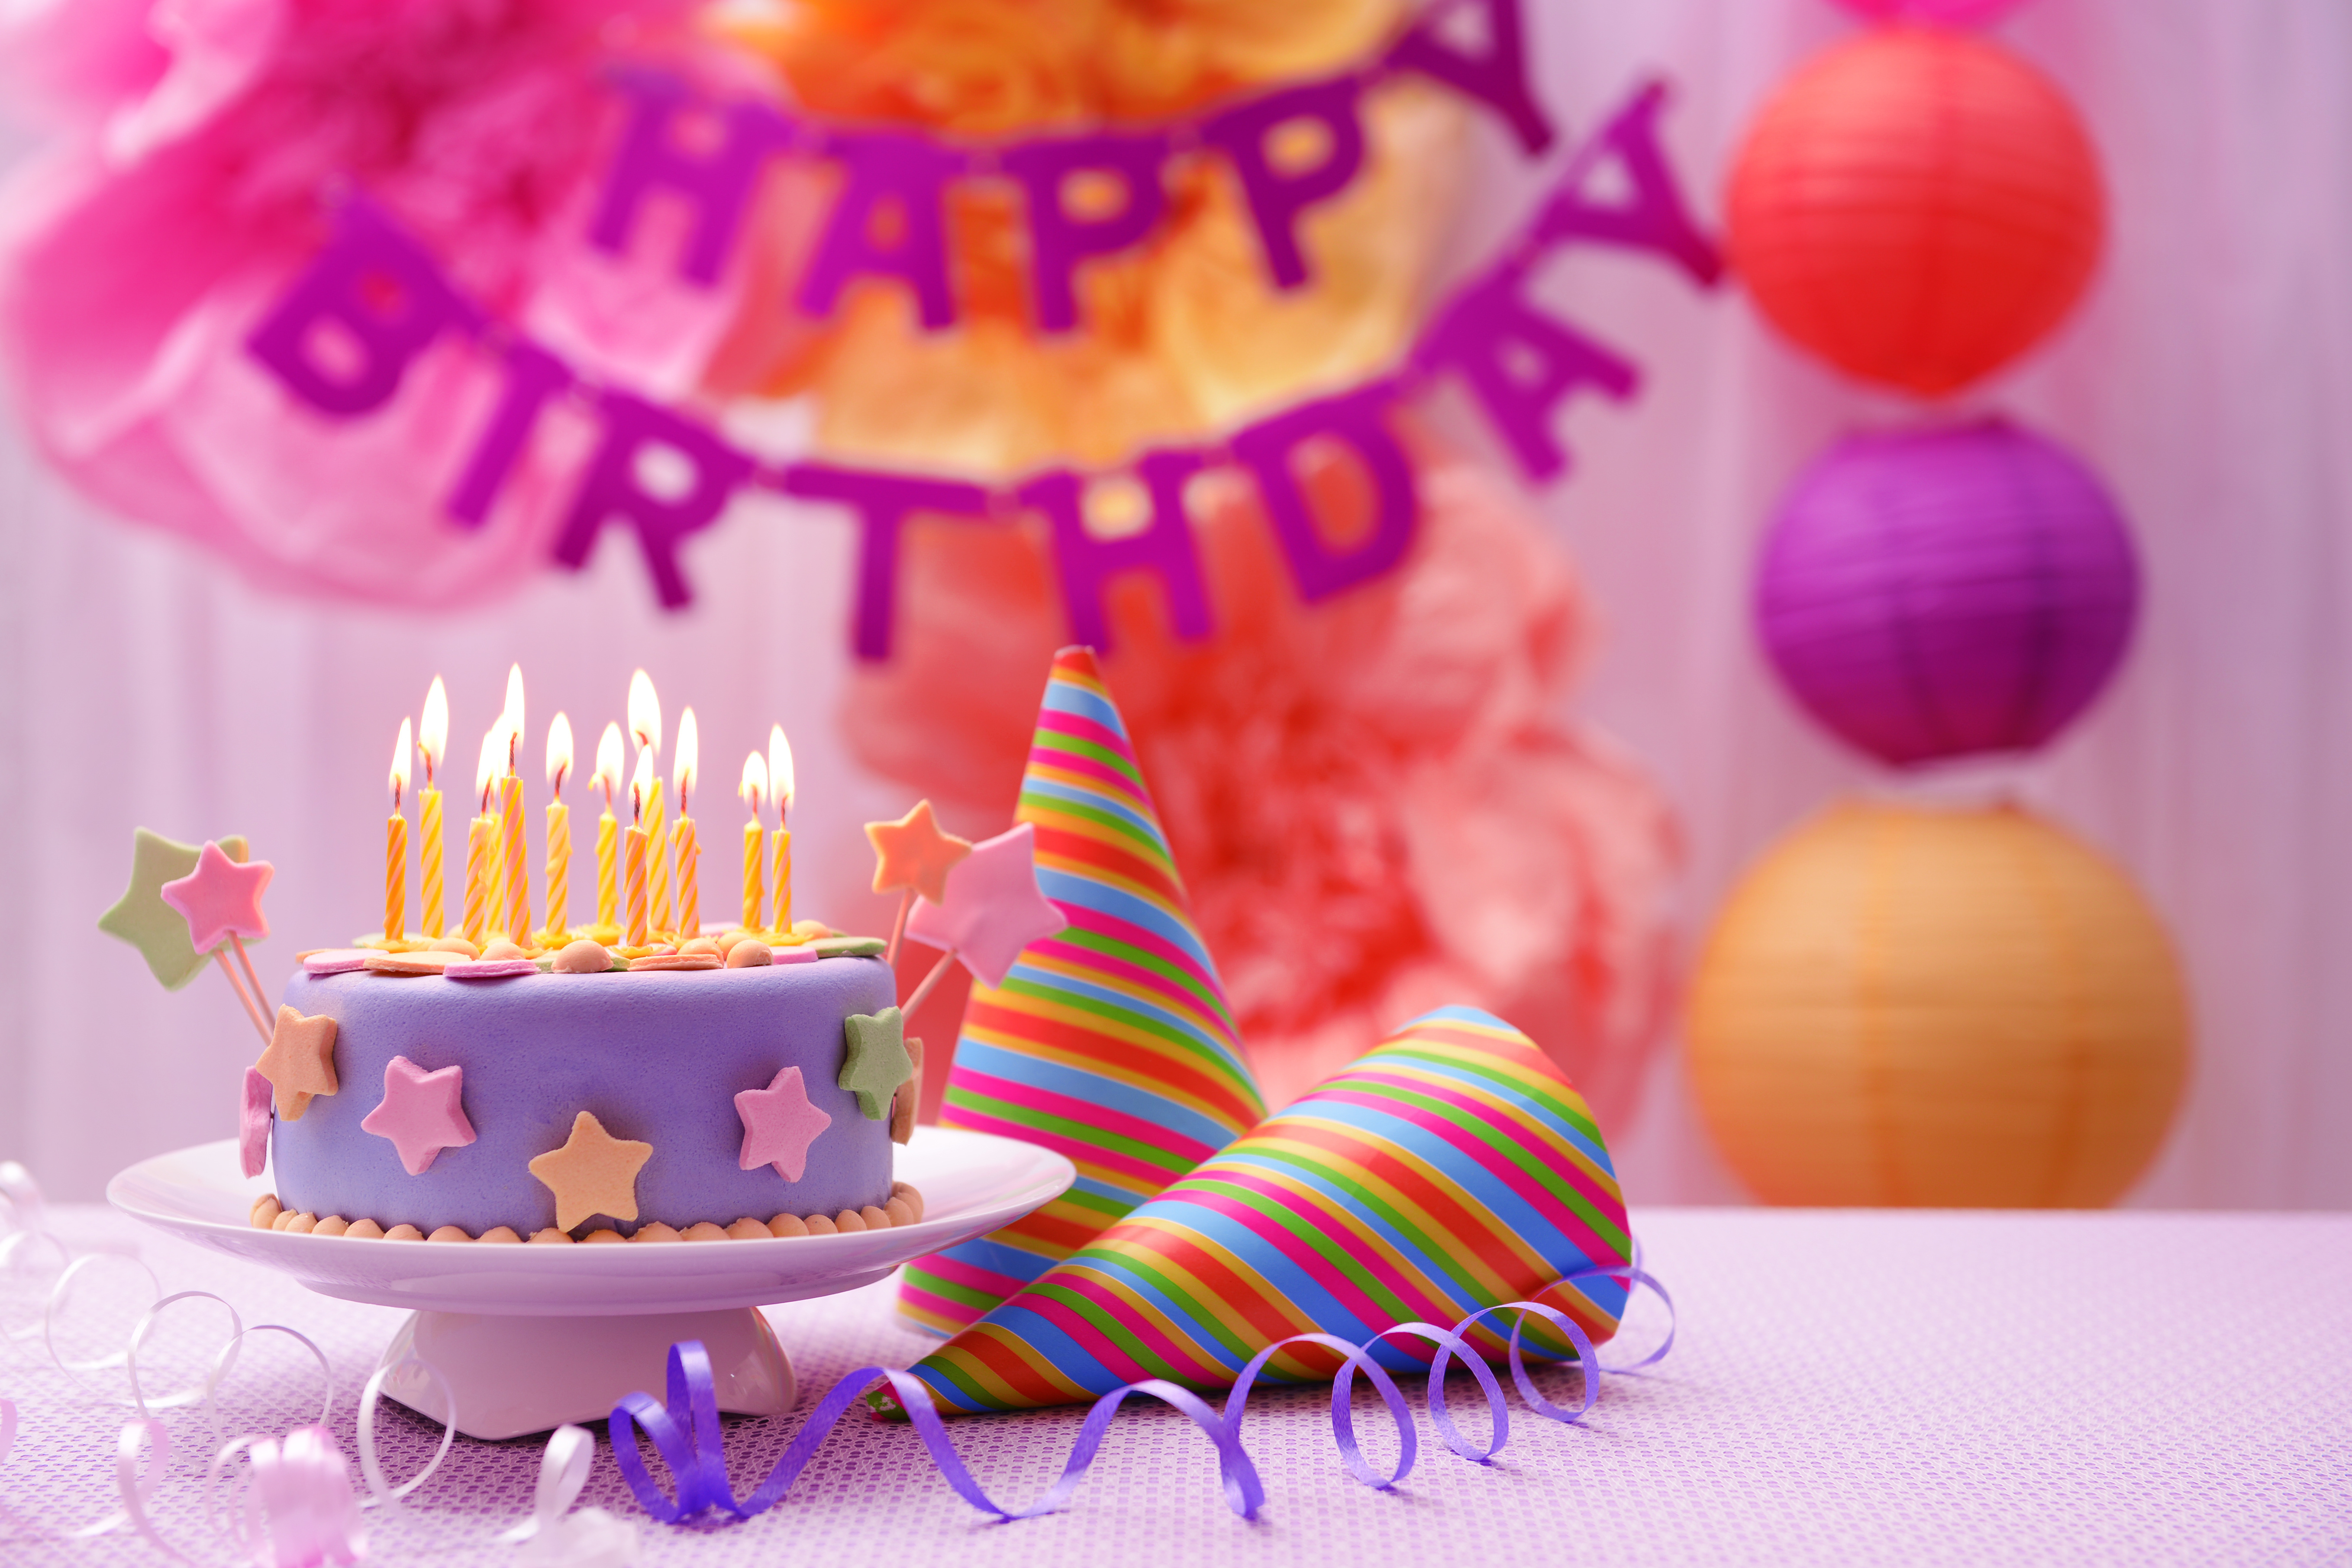 Картинка с днем рождения. С днем рождения. Торт с днем рождения!. Открытки с днём рождения с тортом. Праздничный торт на день рождения.